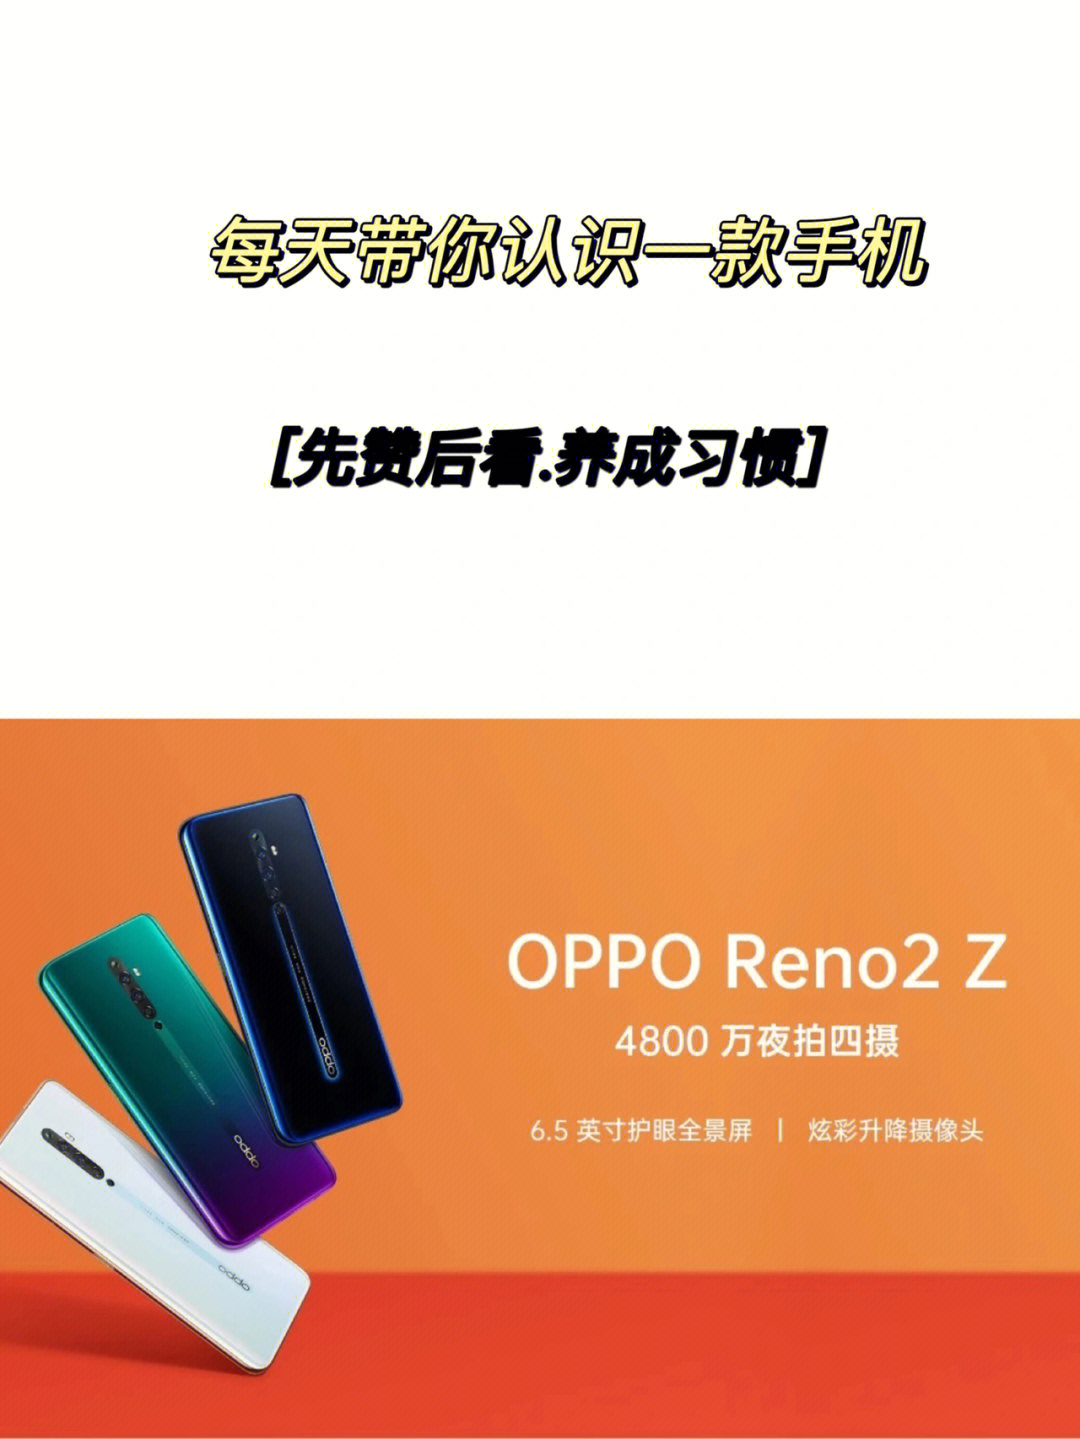 reno2z手机参数图片